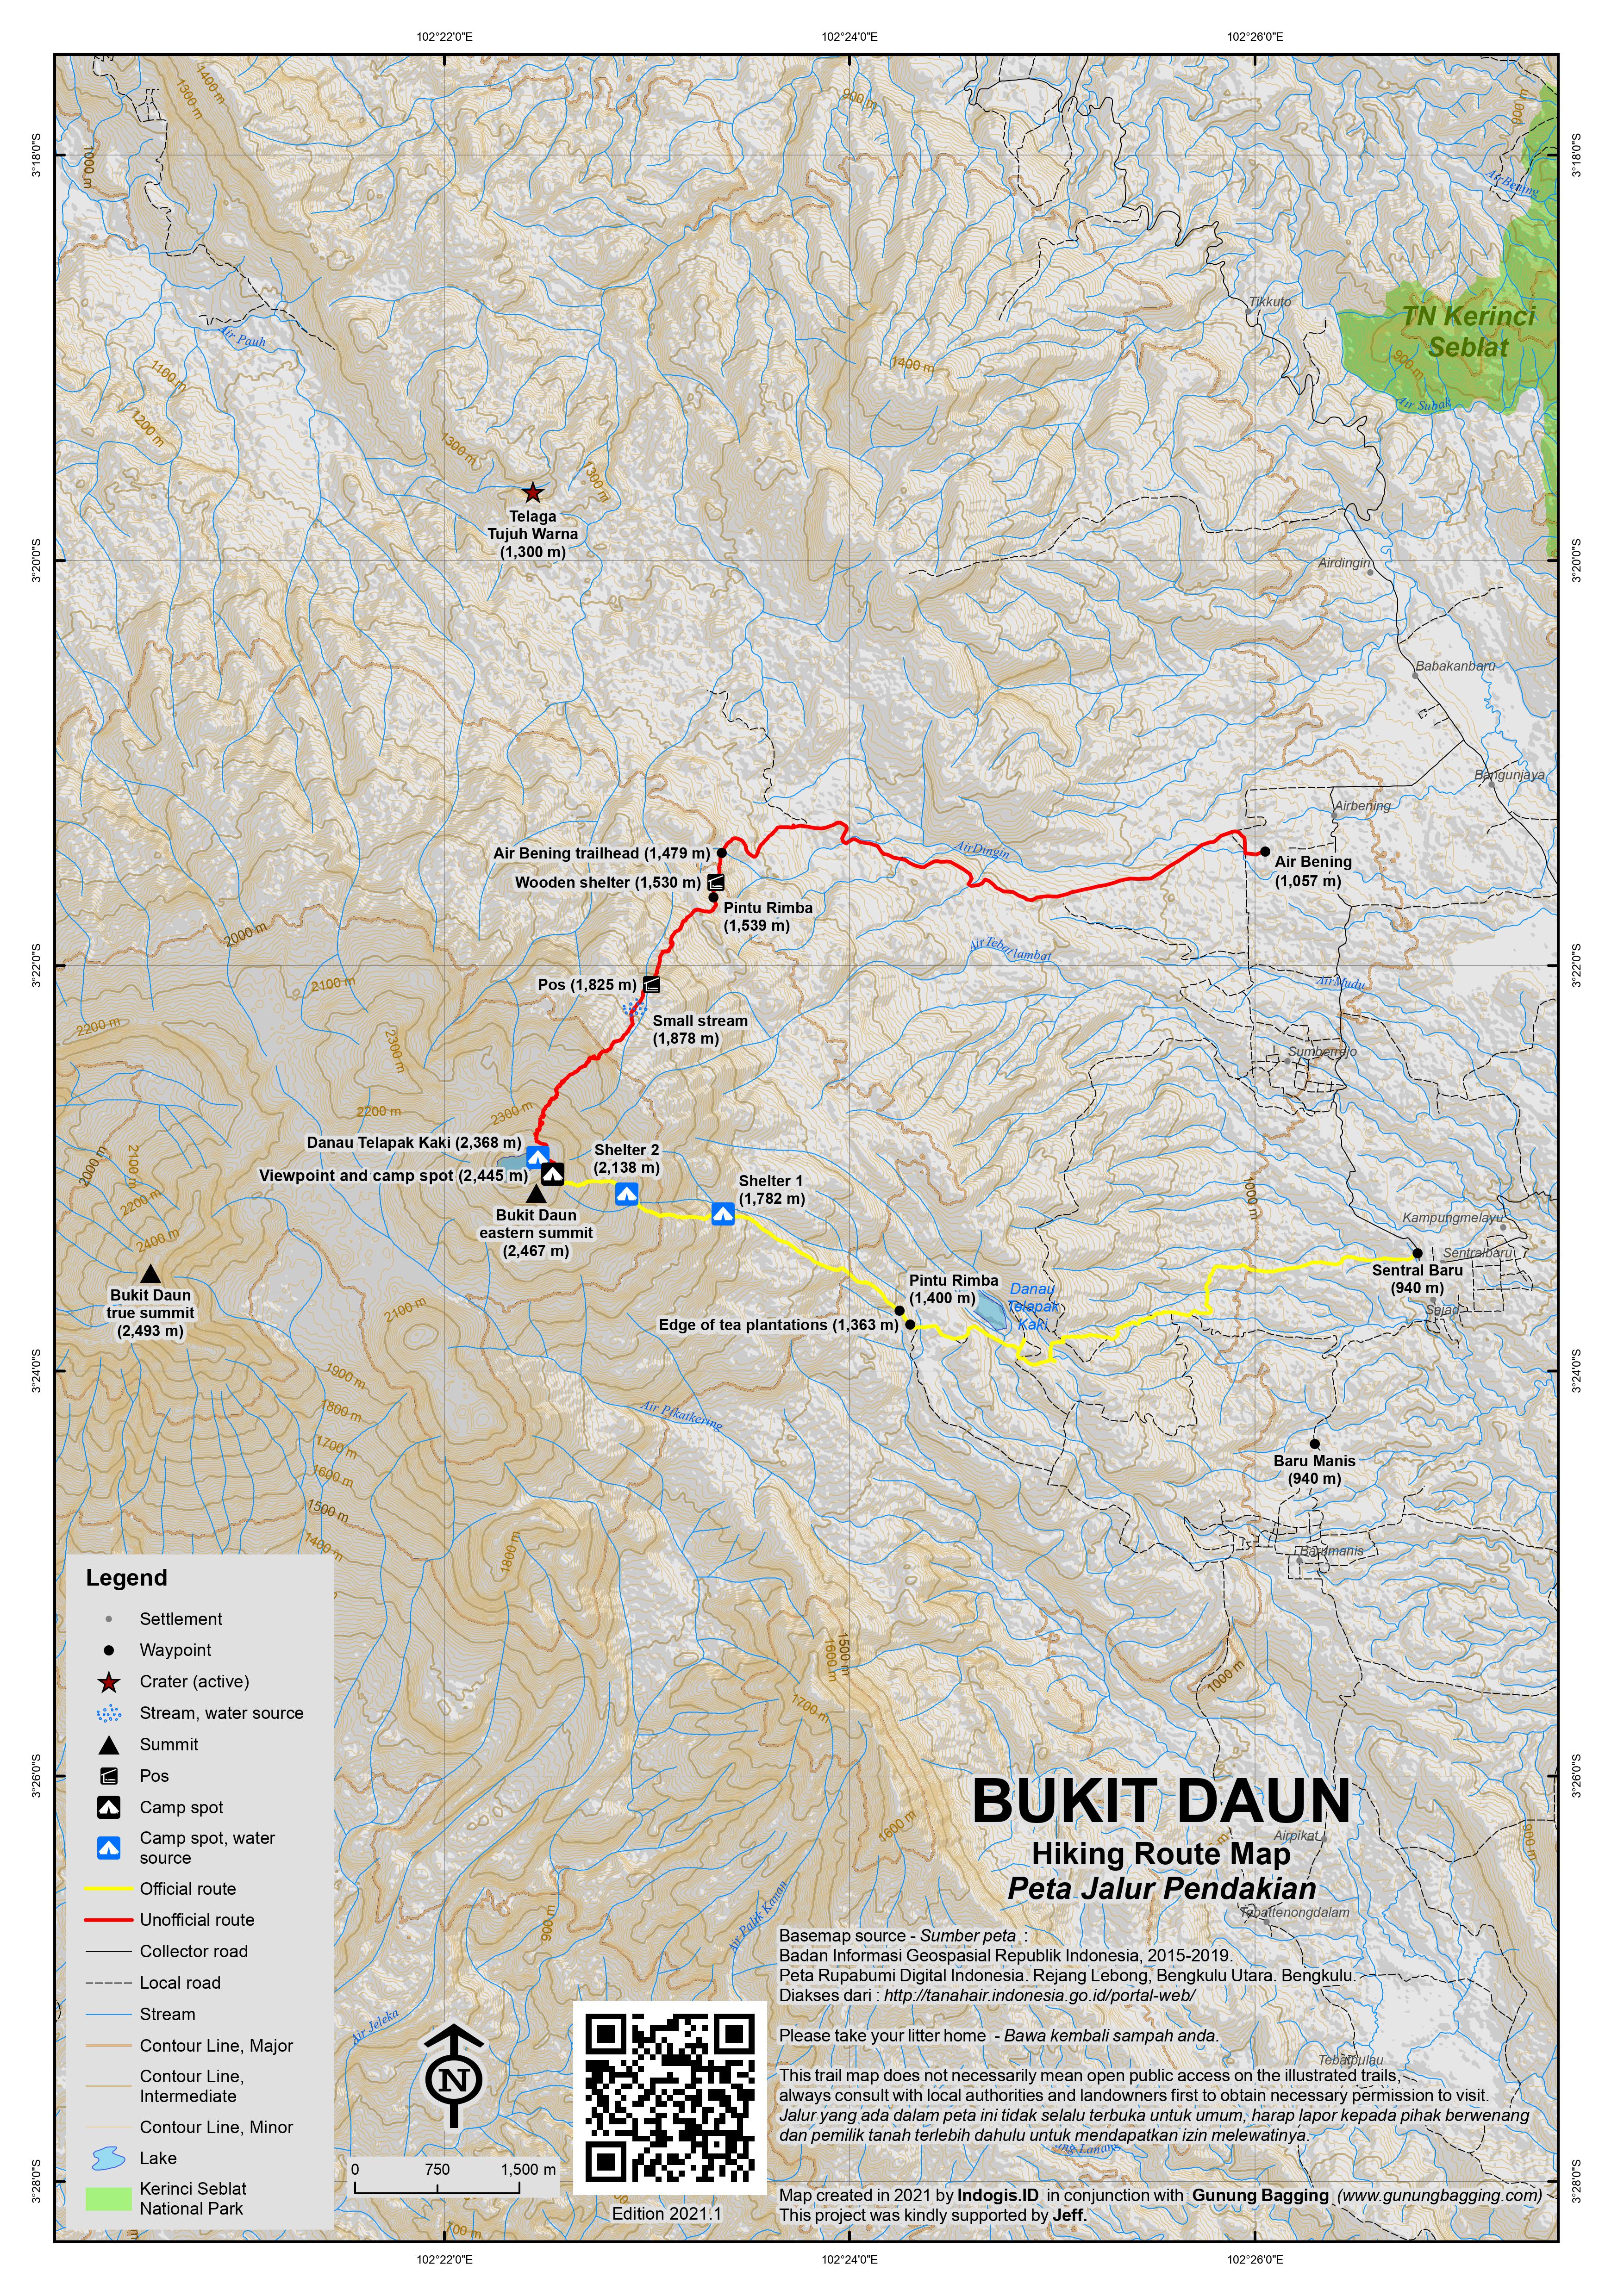 Peta Jalur Pendakian Bukit Daun